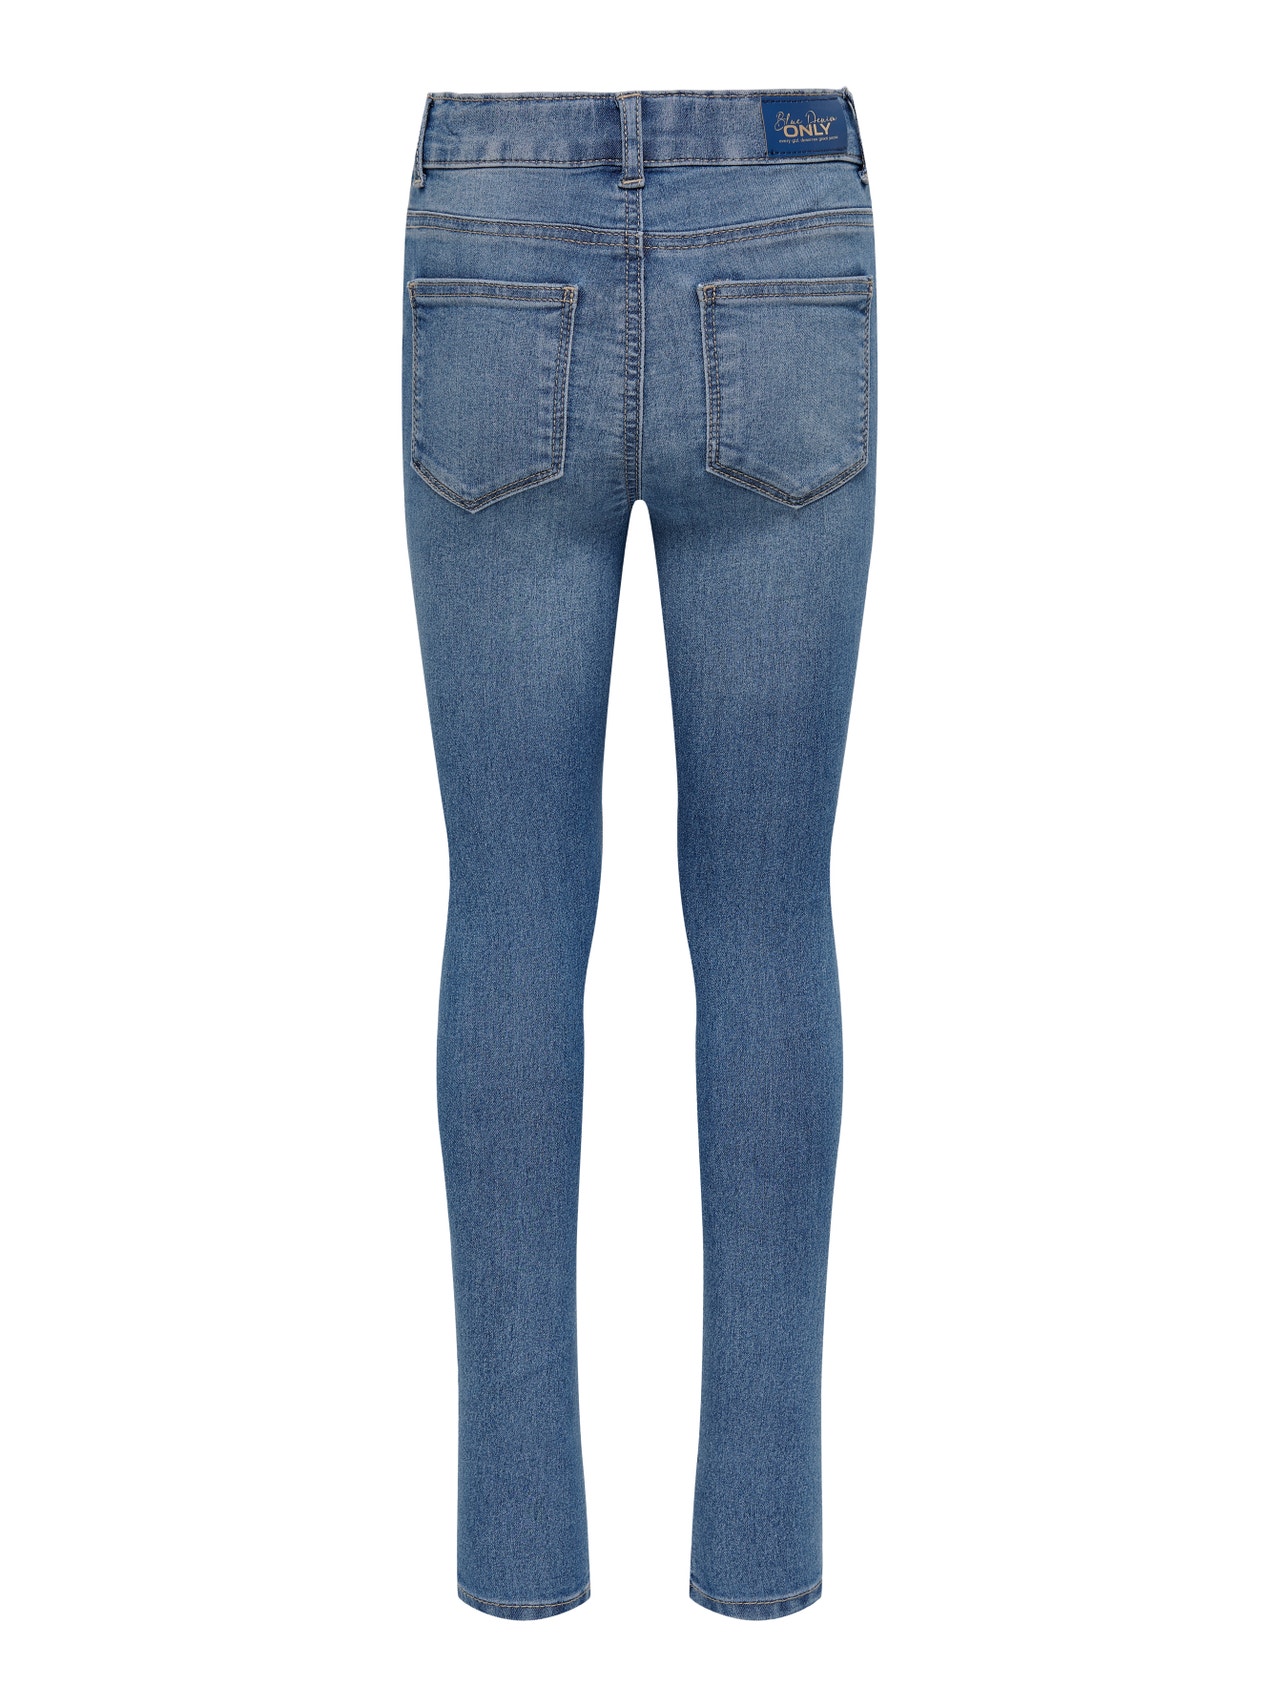 ONLY Skinny Fit Jeans -Light Blue Denim - 15274239